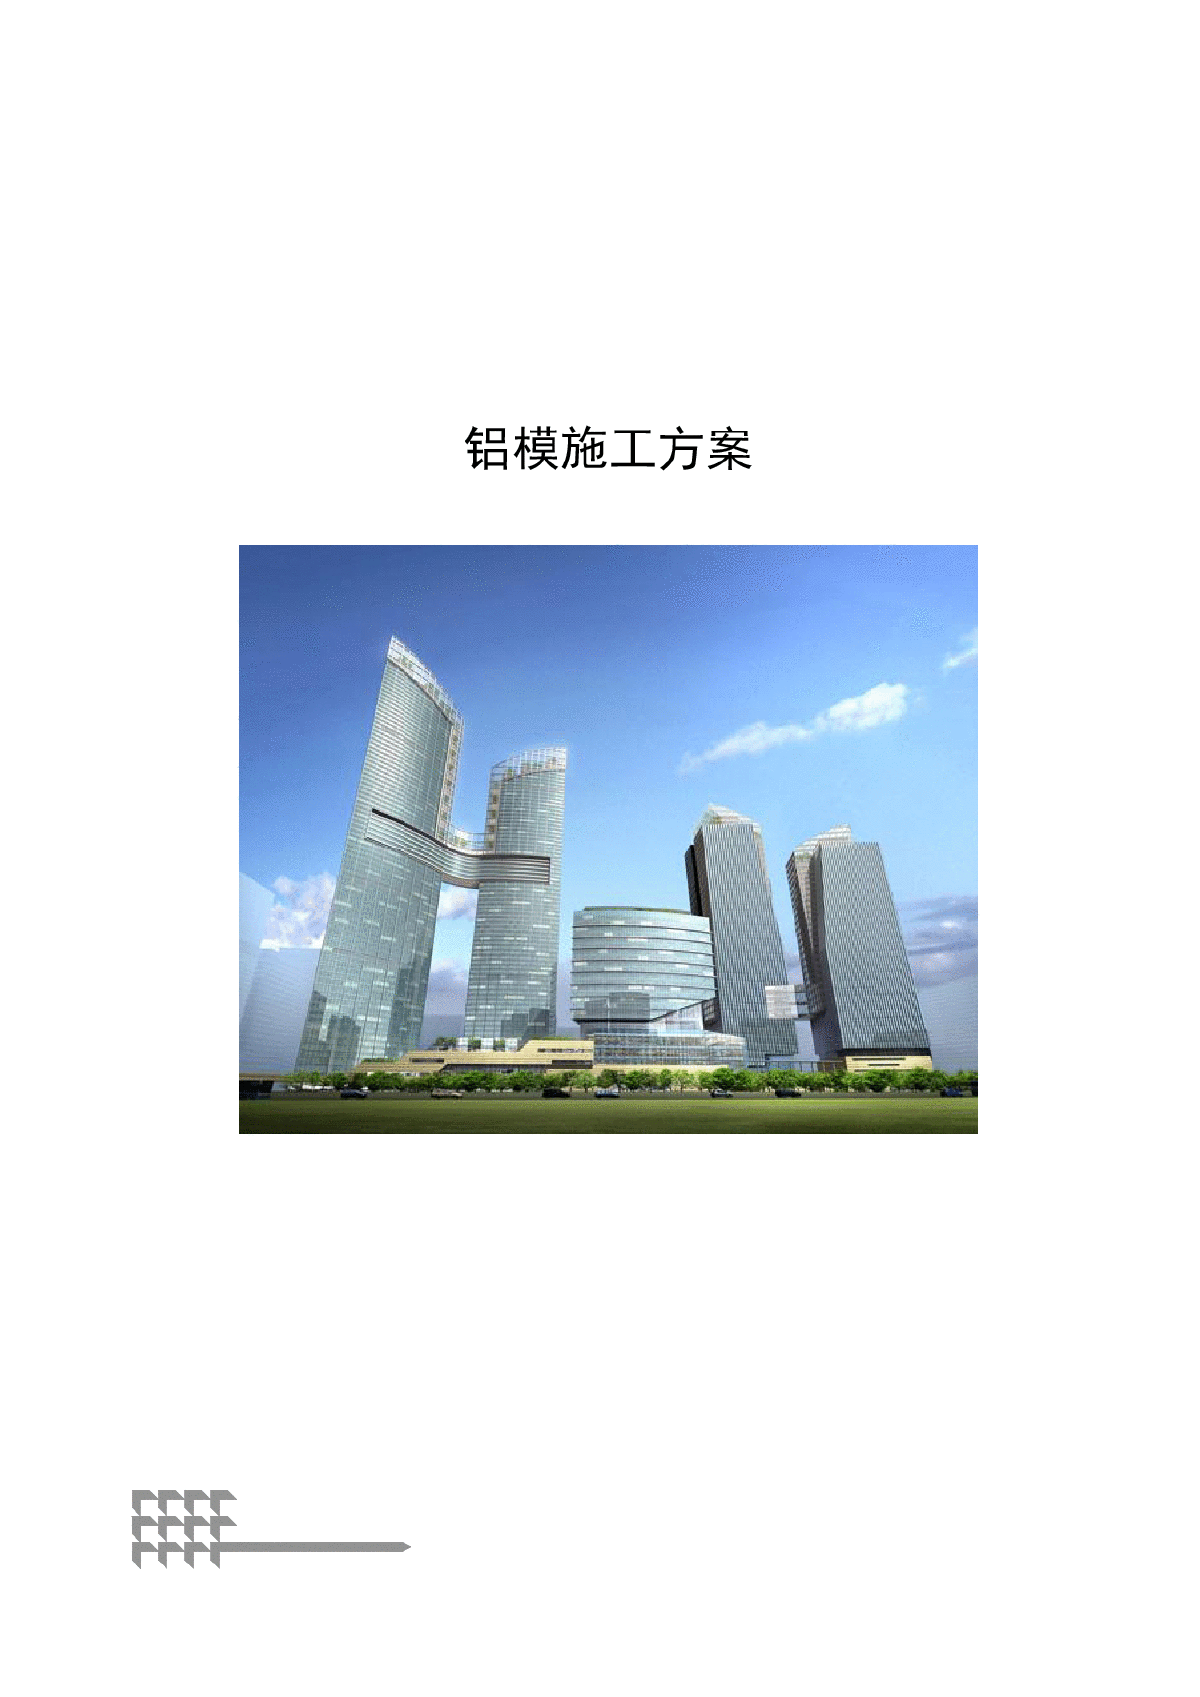 【广东】名企编制超高层公寓塔楼铝模施工方案